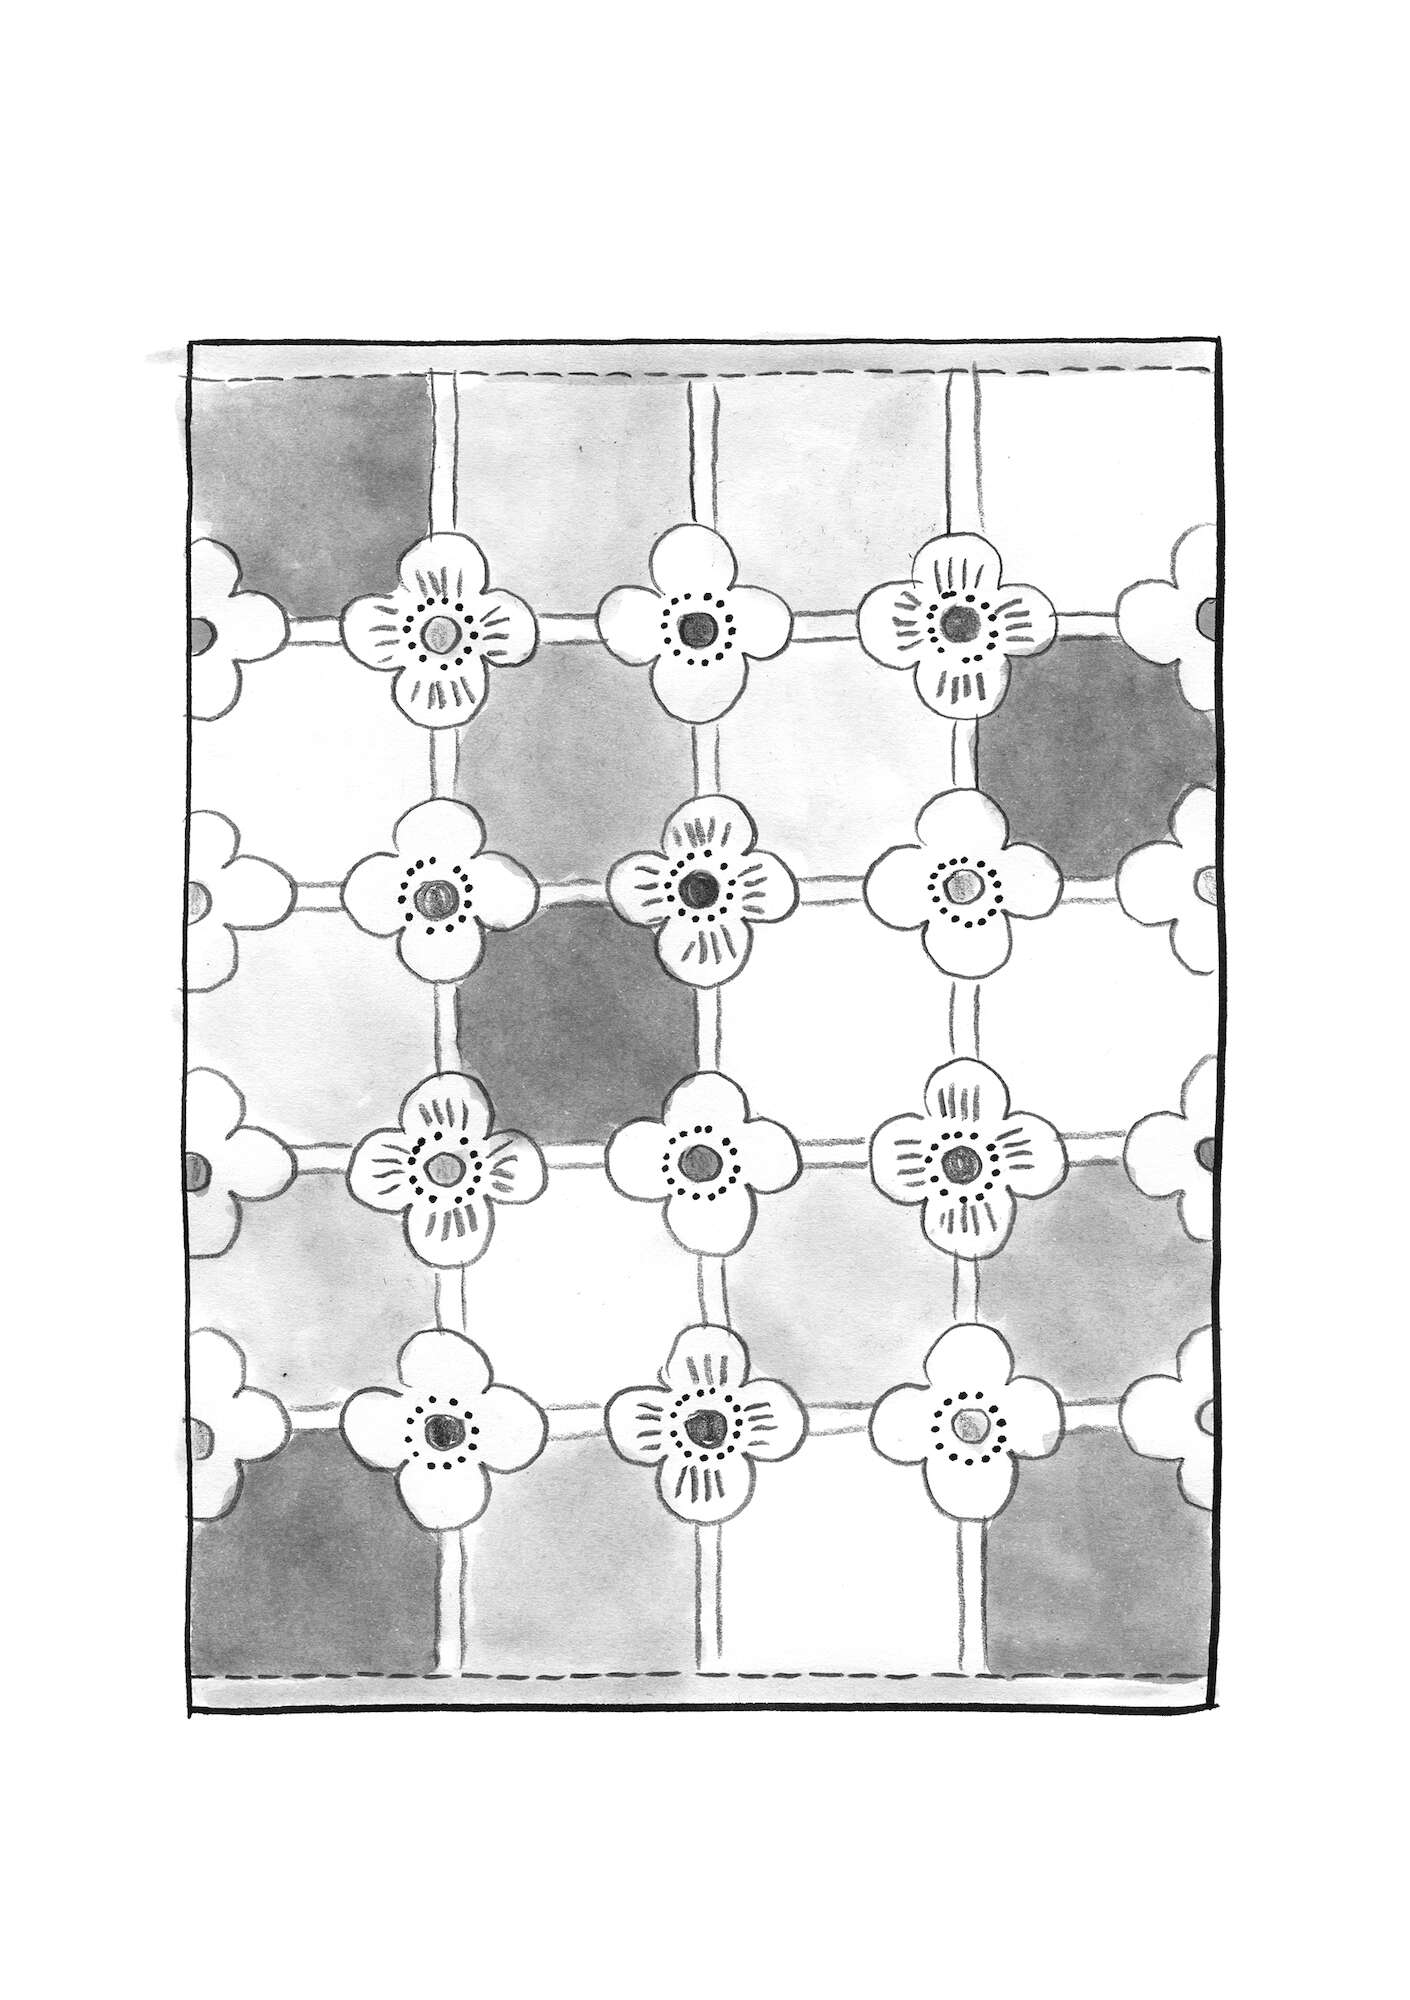 Jacquard-Webteppich „Tiles“ aus Bio-Baumwolle vogelbeere